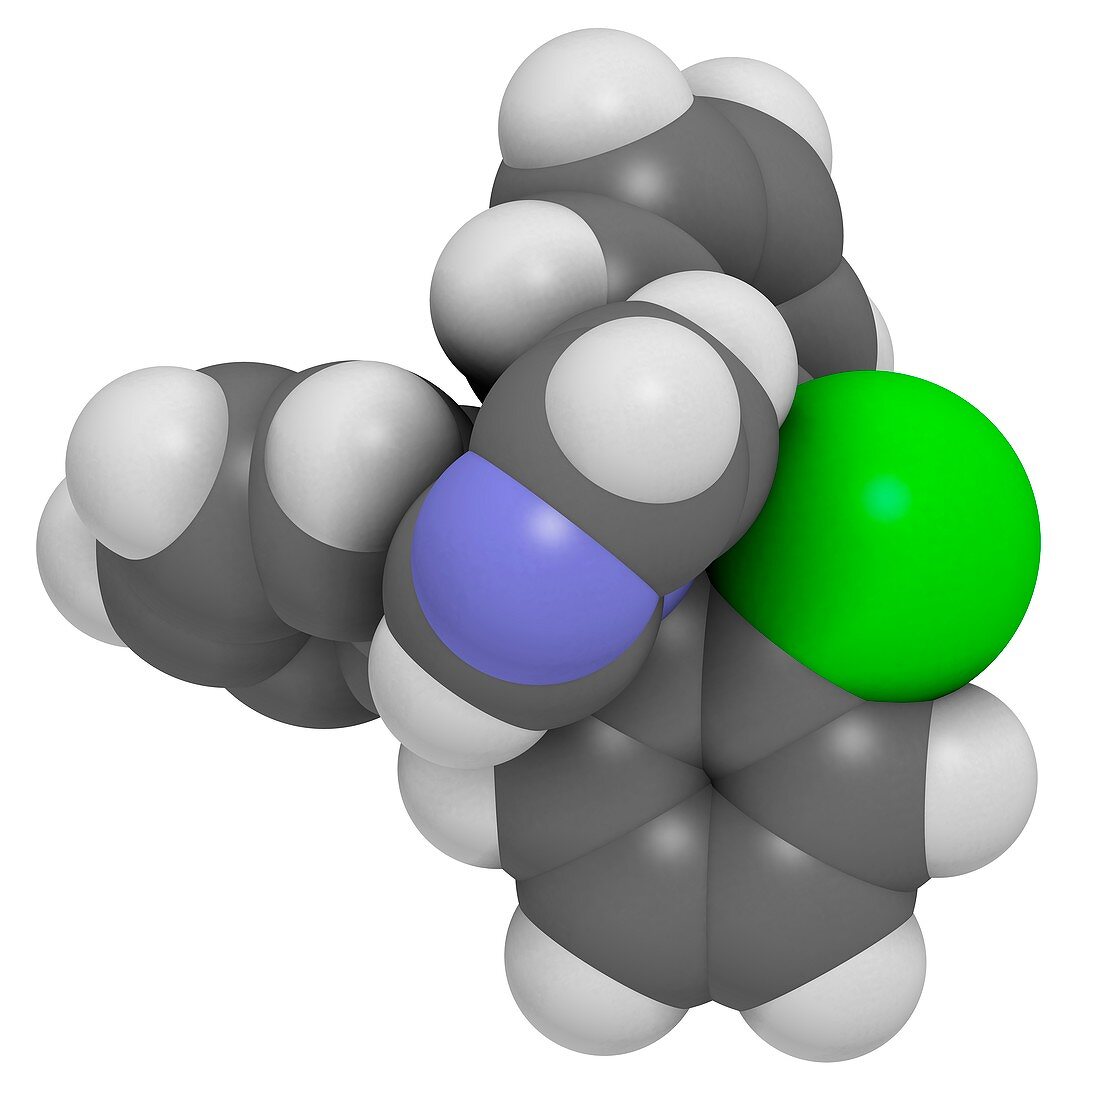 Clotrimazole antifungal drug molecule